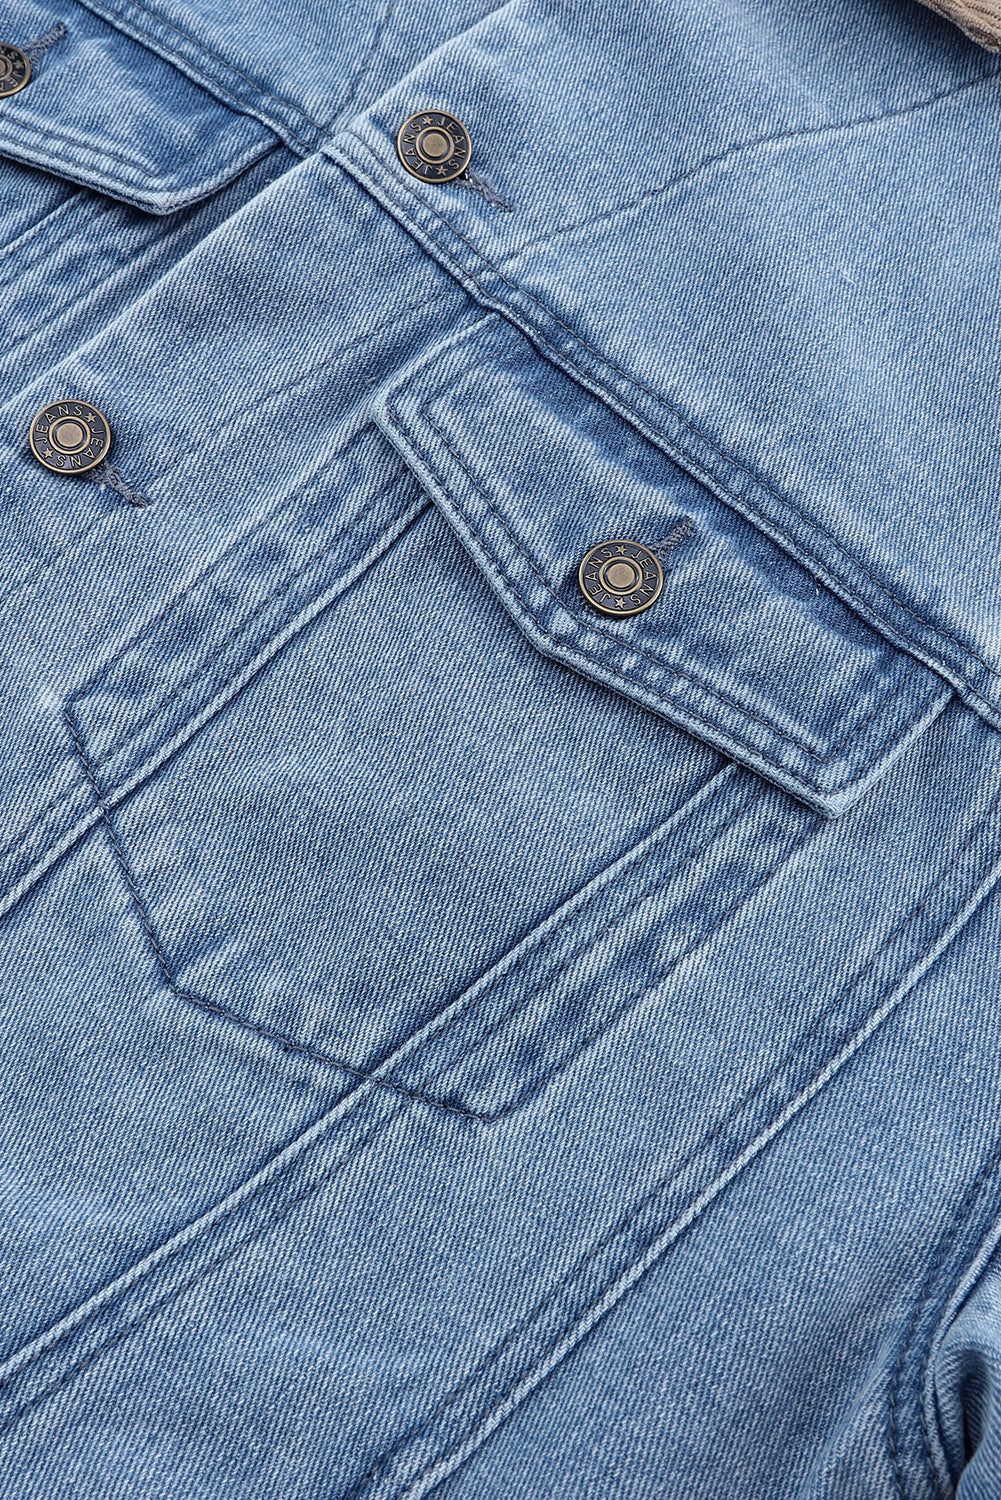 Veste en jean bleu ciel vintage à col en velours côtelé